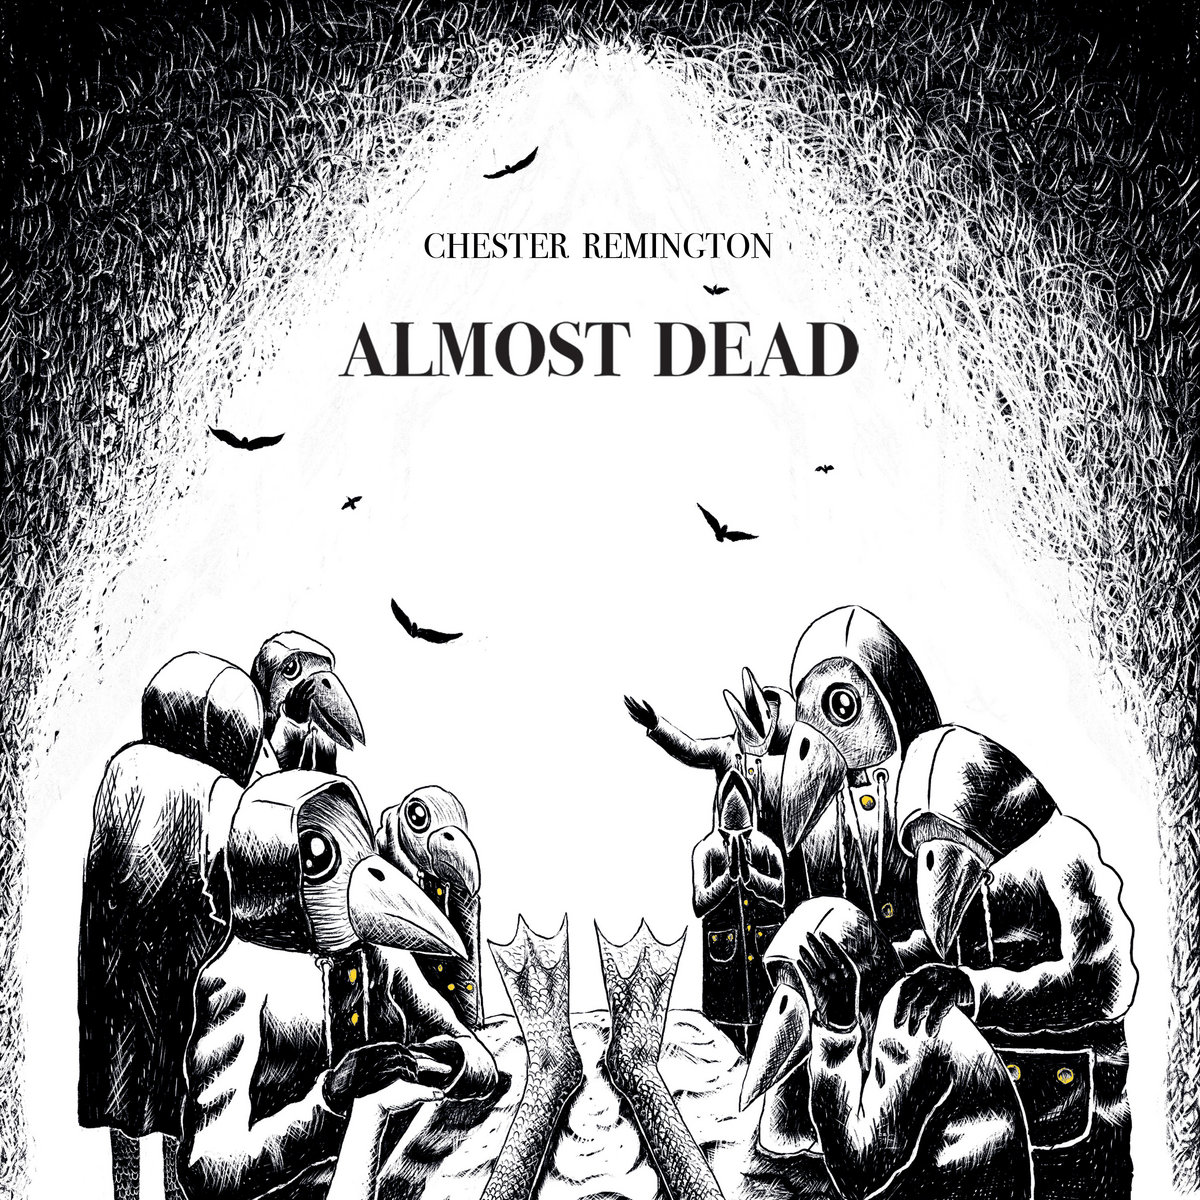 #lessortiesduvendredi

❤️Coup de coeur du jour ❤️

Chester Remington - Almost Dead

@HowlinBananarec